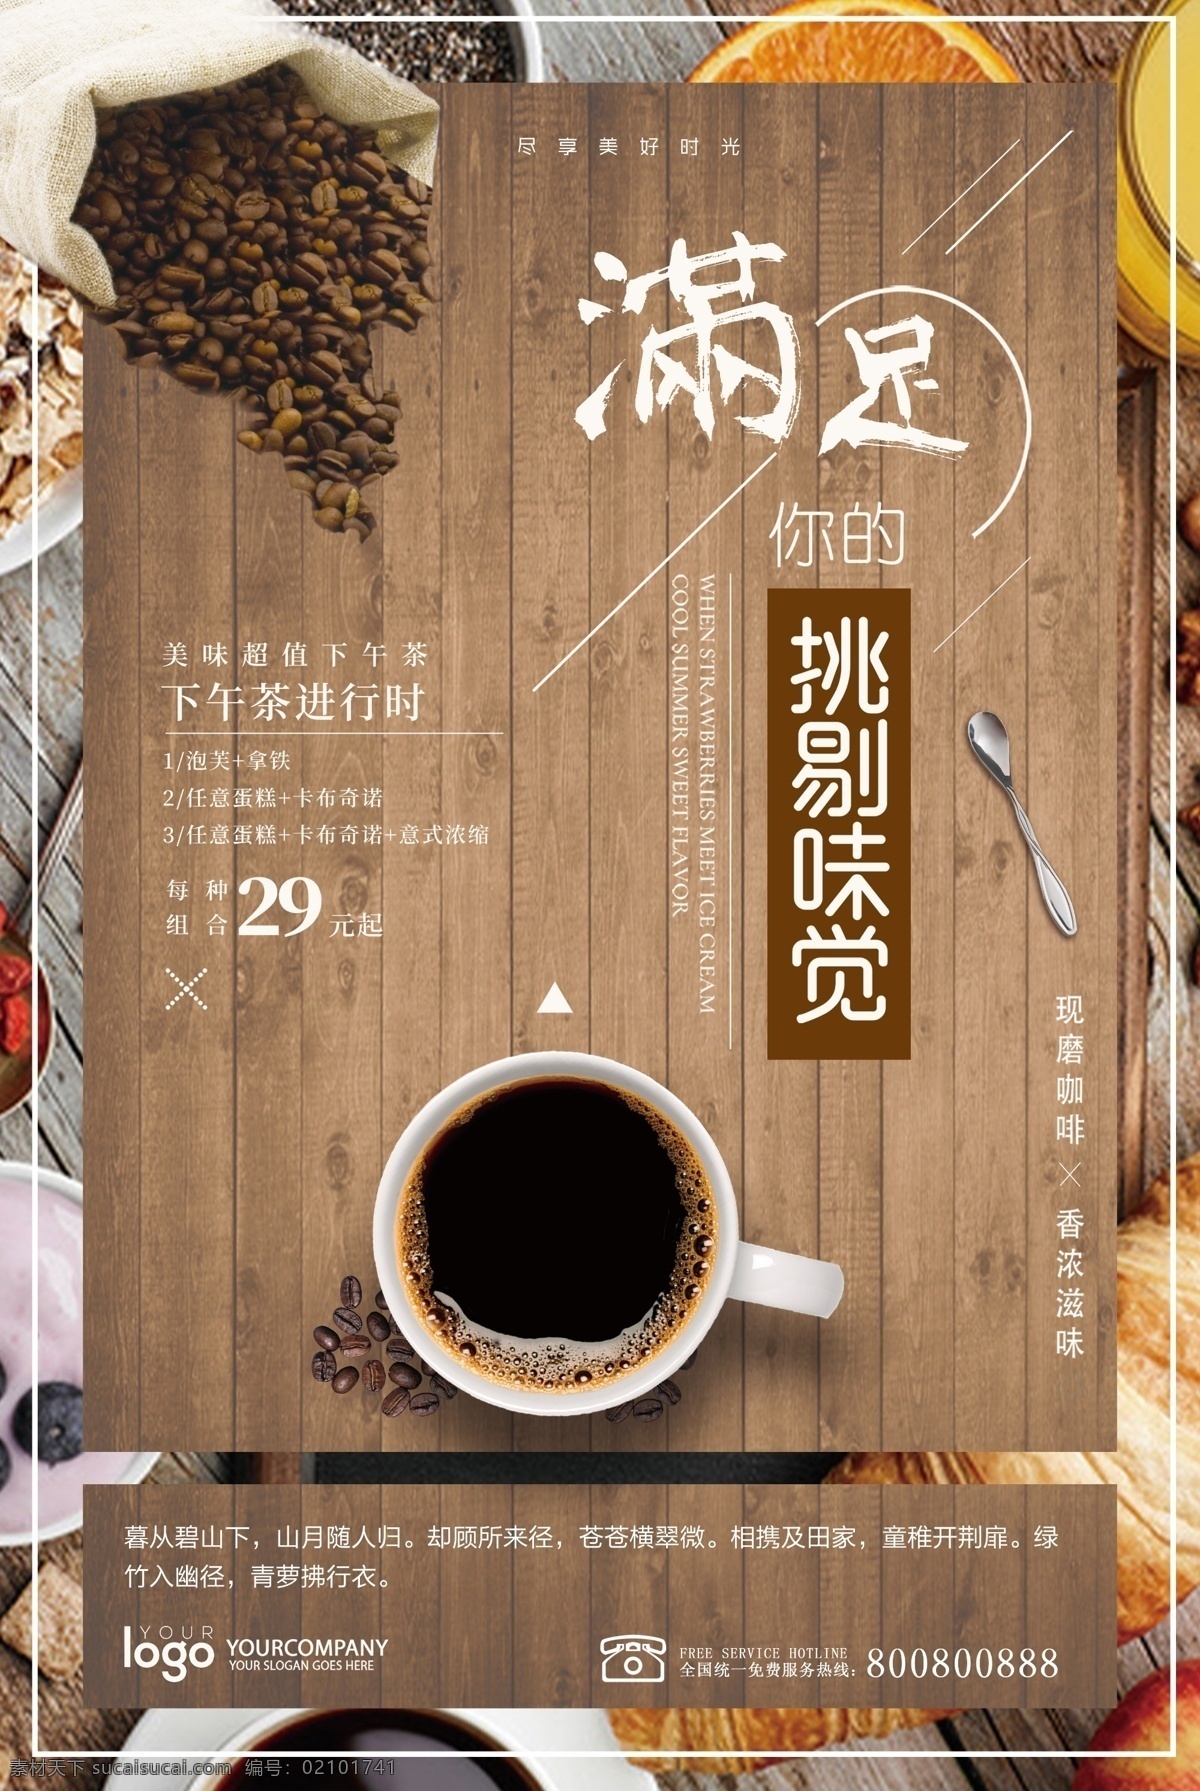 高清 咖啡 美食 海报 满足 挑剔 味觉 美味海报 咖啡海报 促销海报 餐厅海报 餐饮海报 咖啡豆 桌子 勺子